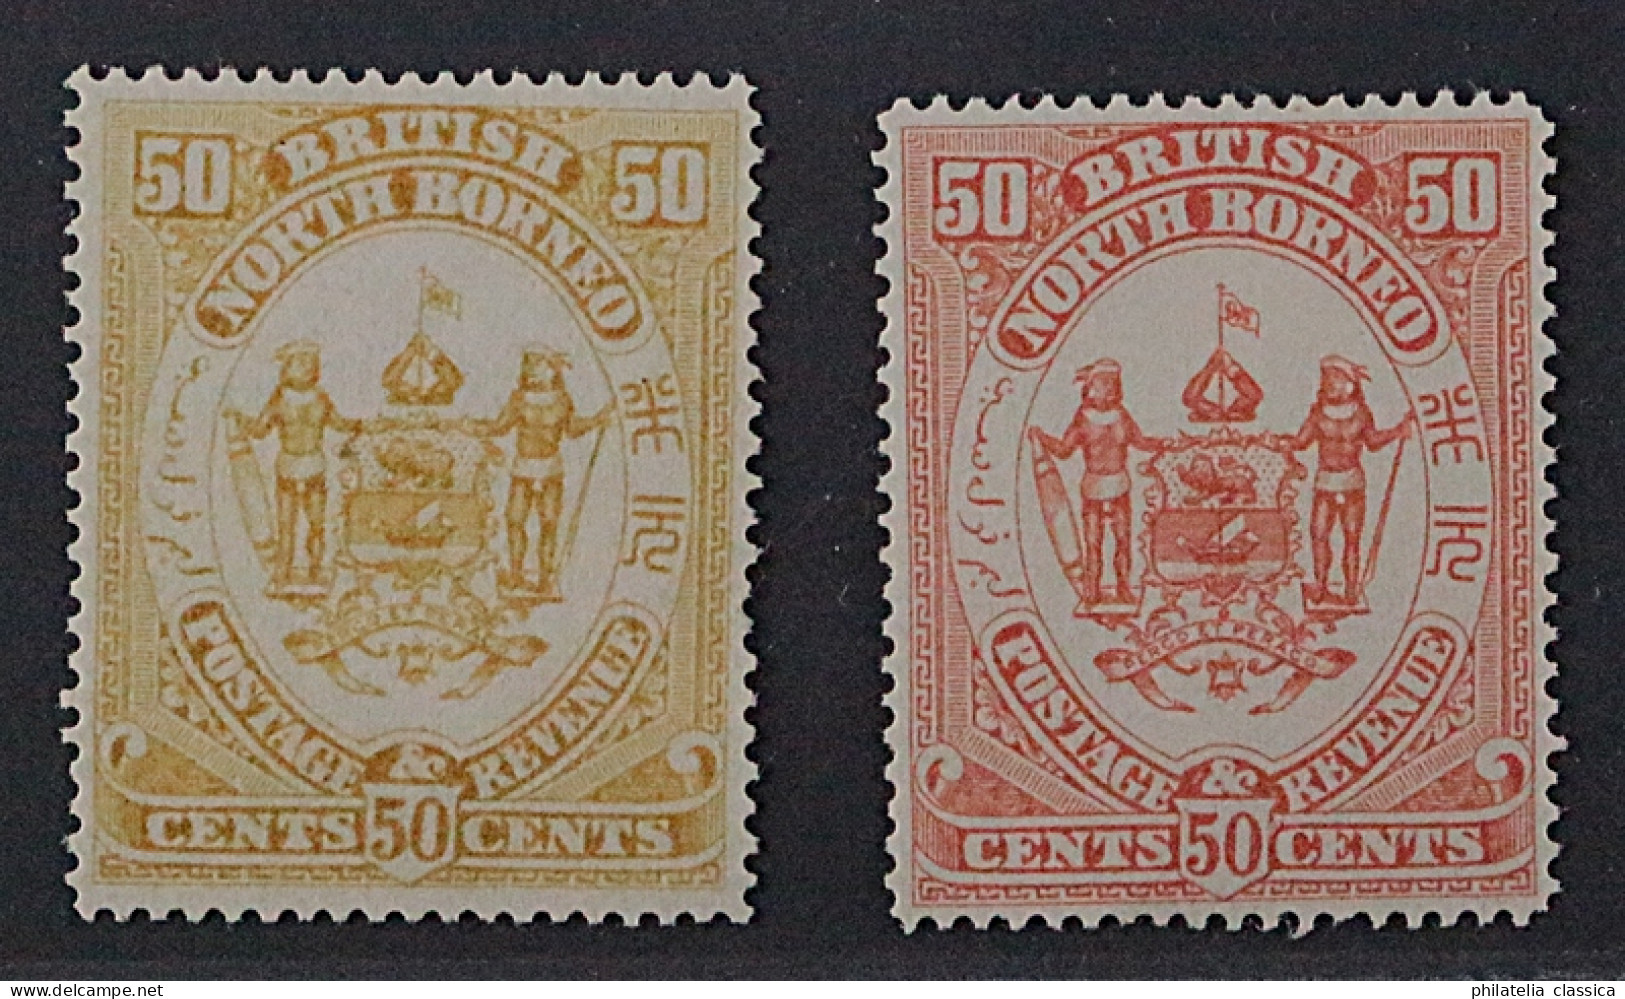 Nordborneo 35 P ** 1888, 50 C. PROBEDRUCK In Gelb+gelborange, Postfrisch, SELTEN - North Borneo (...-1963)